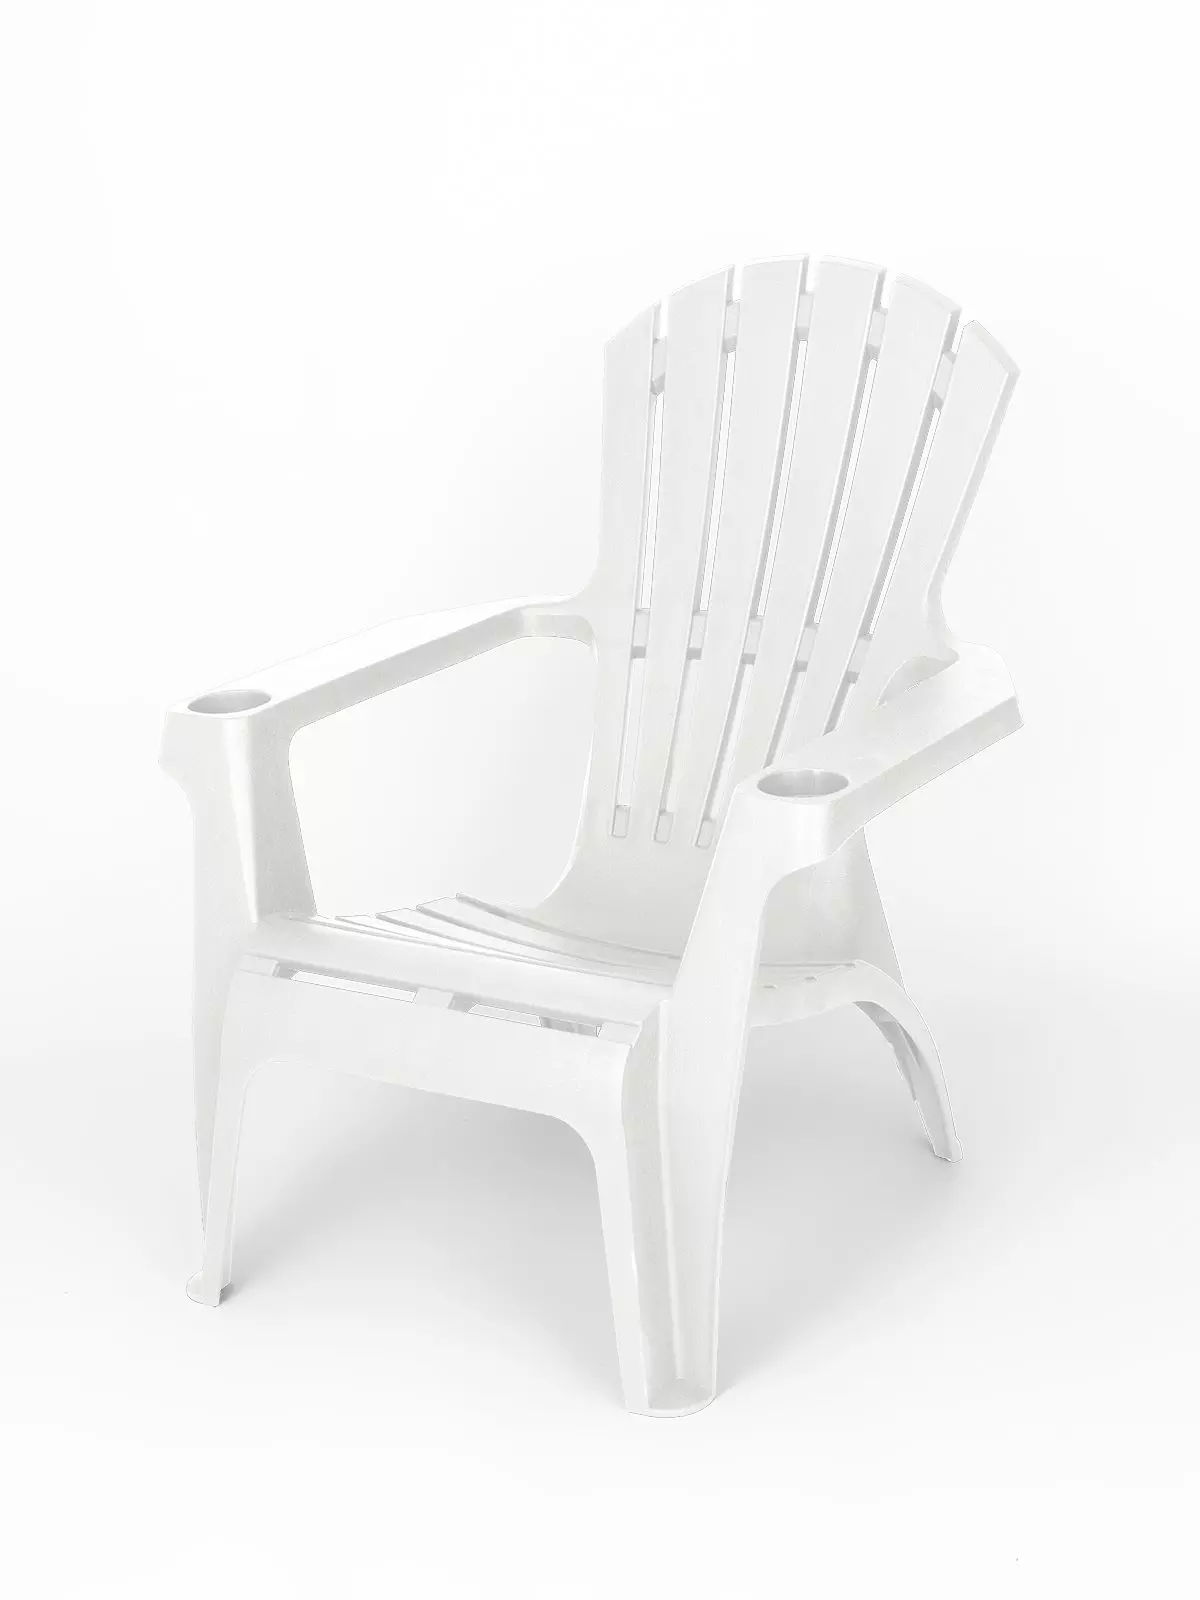 Кресло пластиковое Майами арт.М-GS01 (белое)